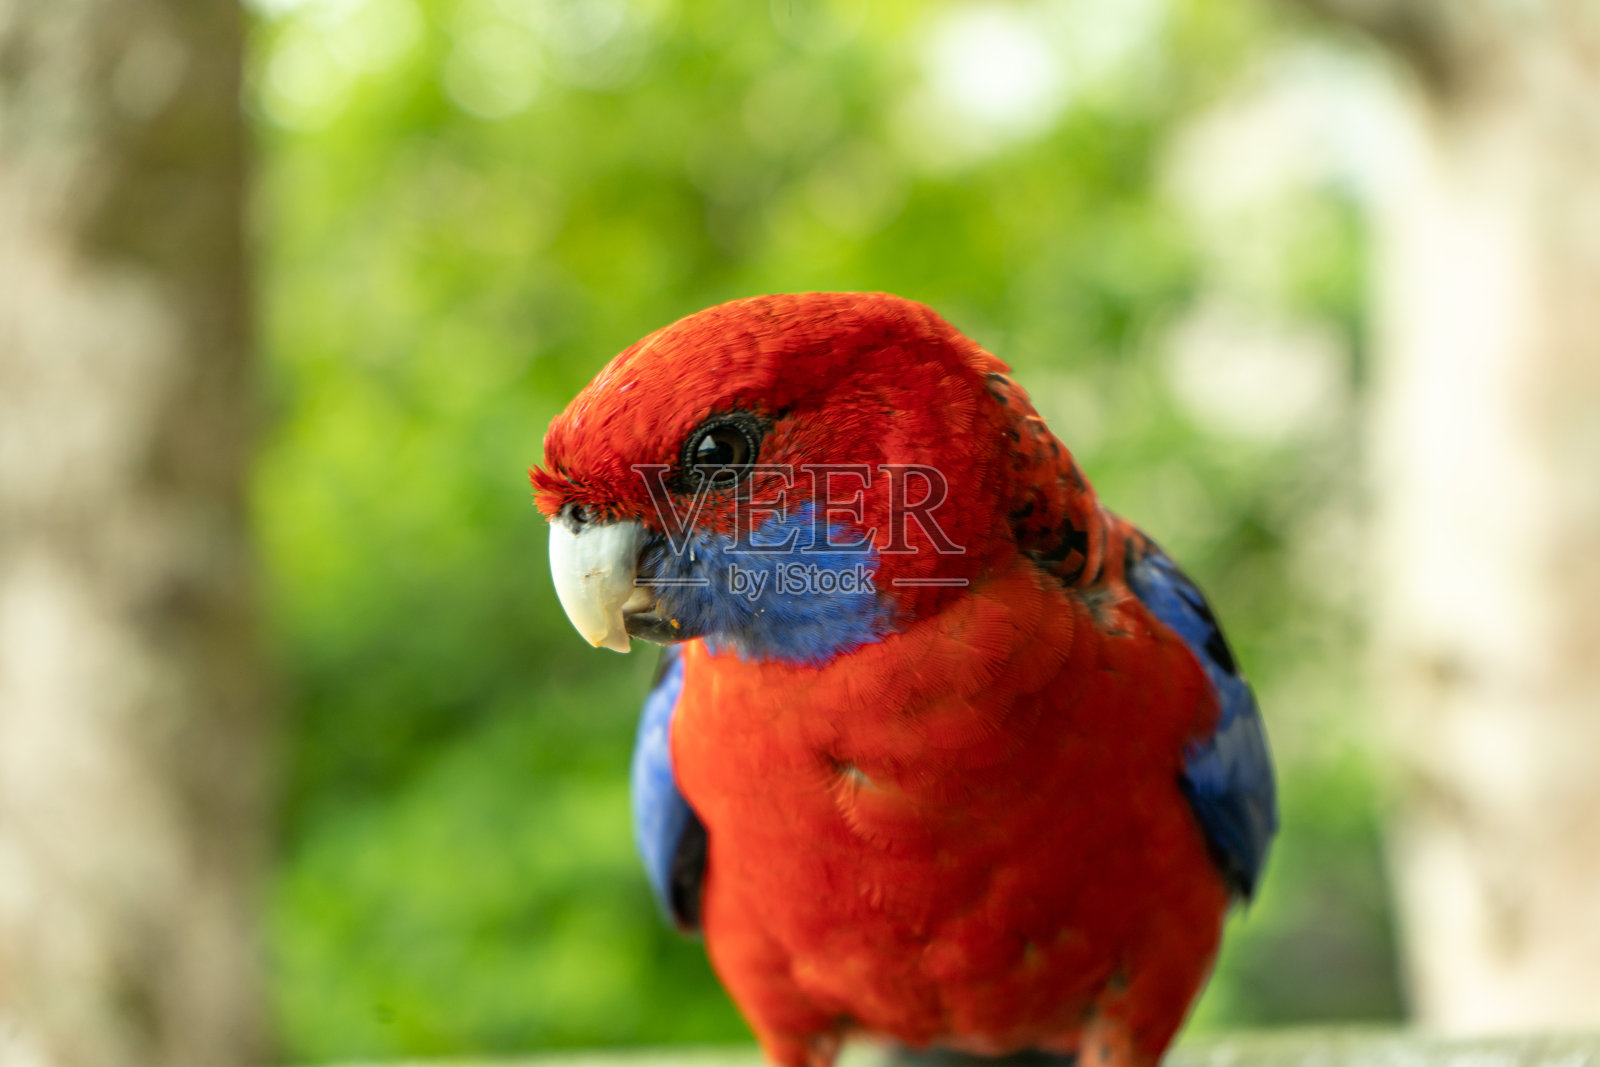 蔷薇花鸟澳大利亚昆士兰美丽鲜艳的红色和蓝色热带色彩斑斓的鹦鹉照片摄影图片